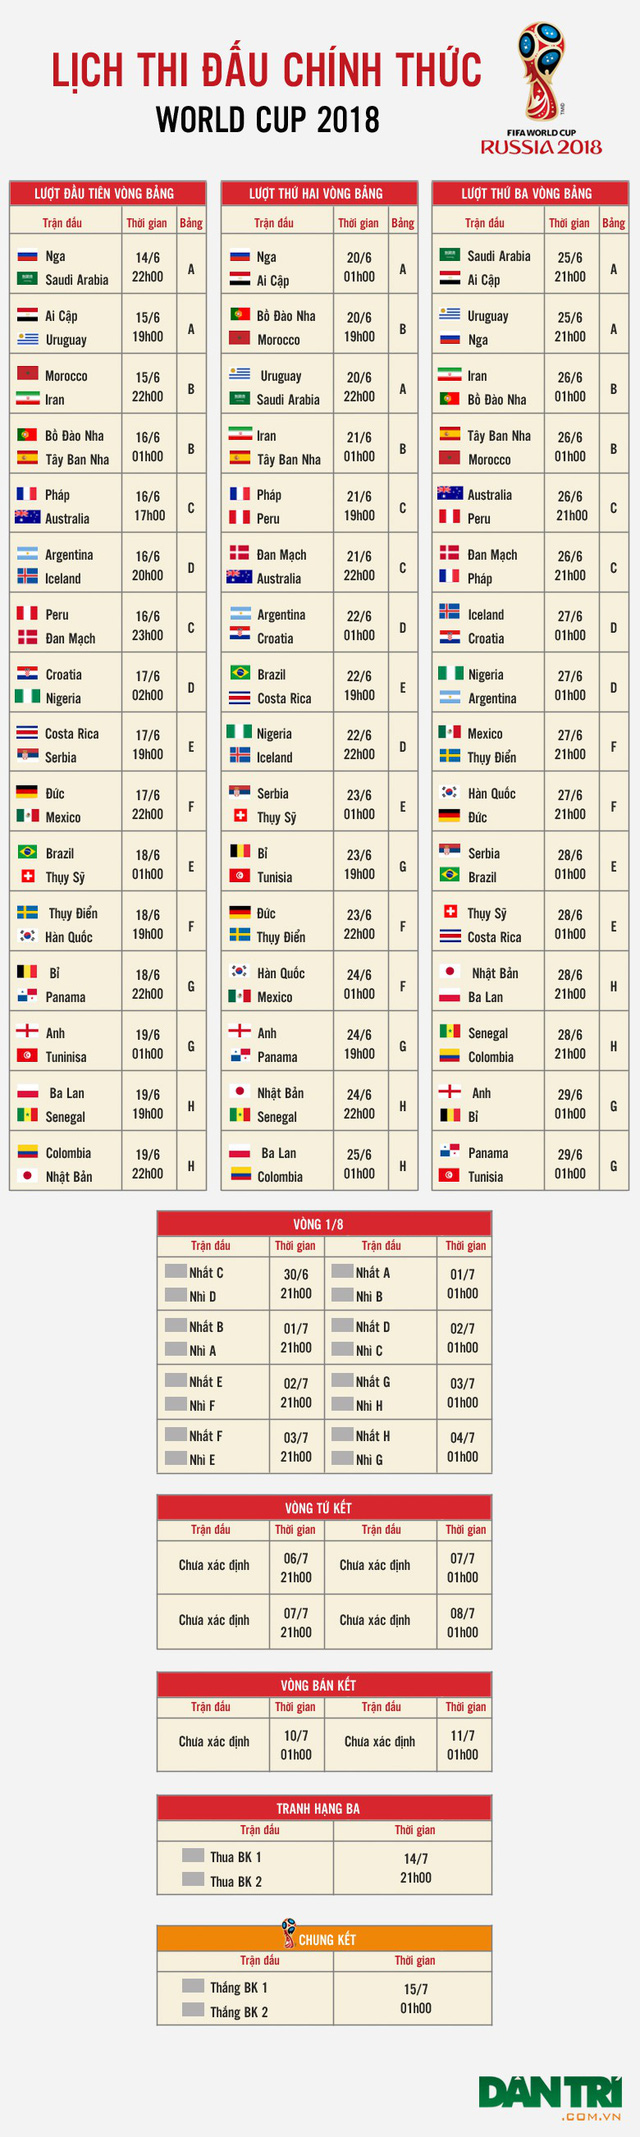 Lịch thi đấu chính thức World Cup 2018